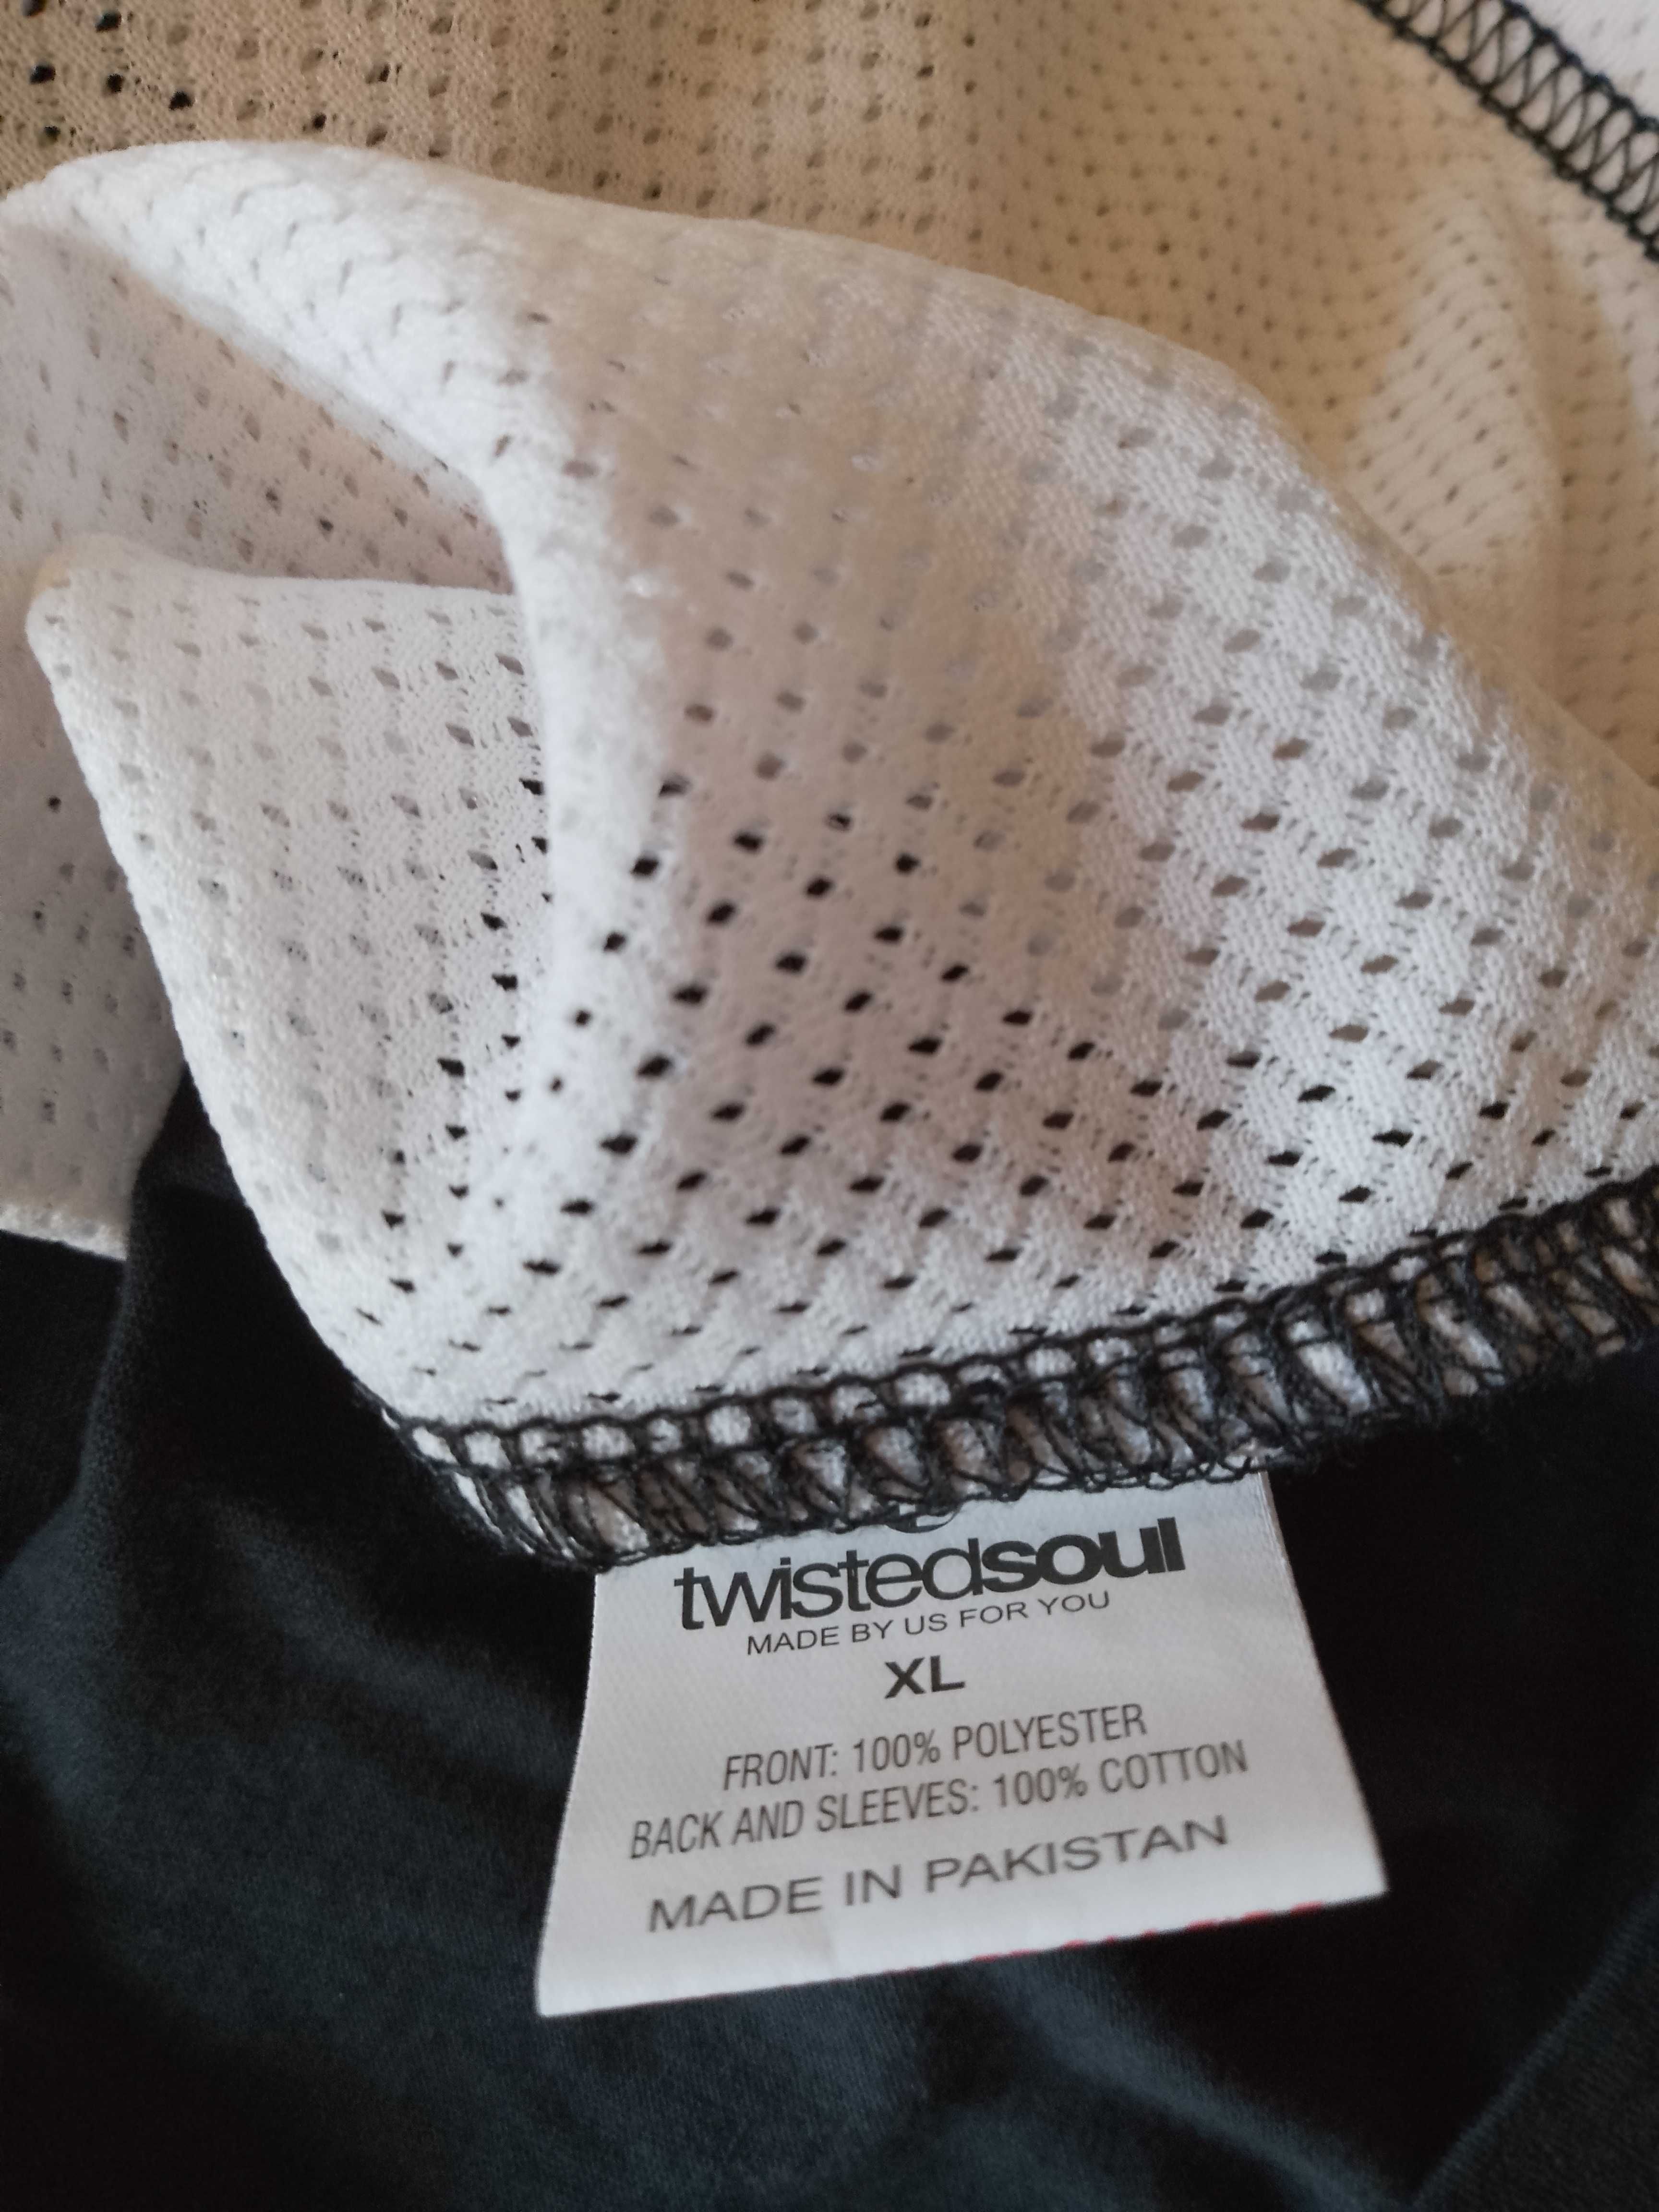 Koszulka z tygrysem Twisted Soul XL outlet wada